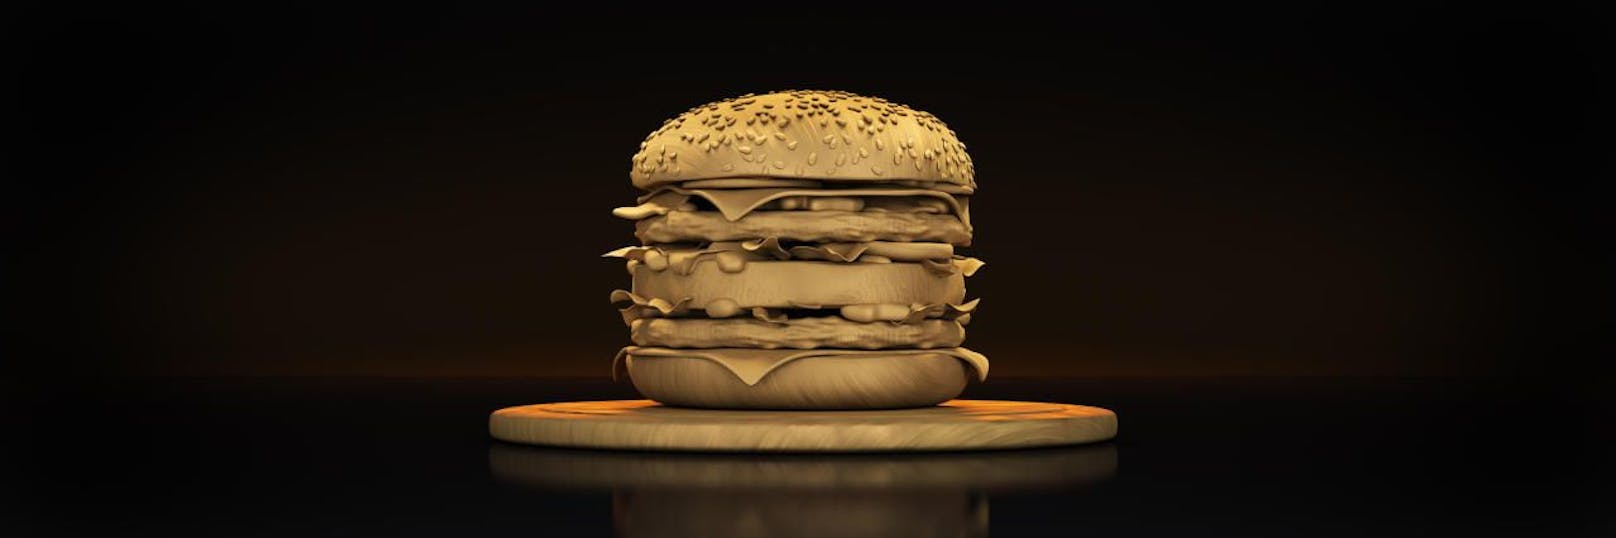 Burger aus Gold